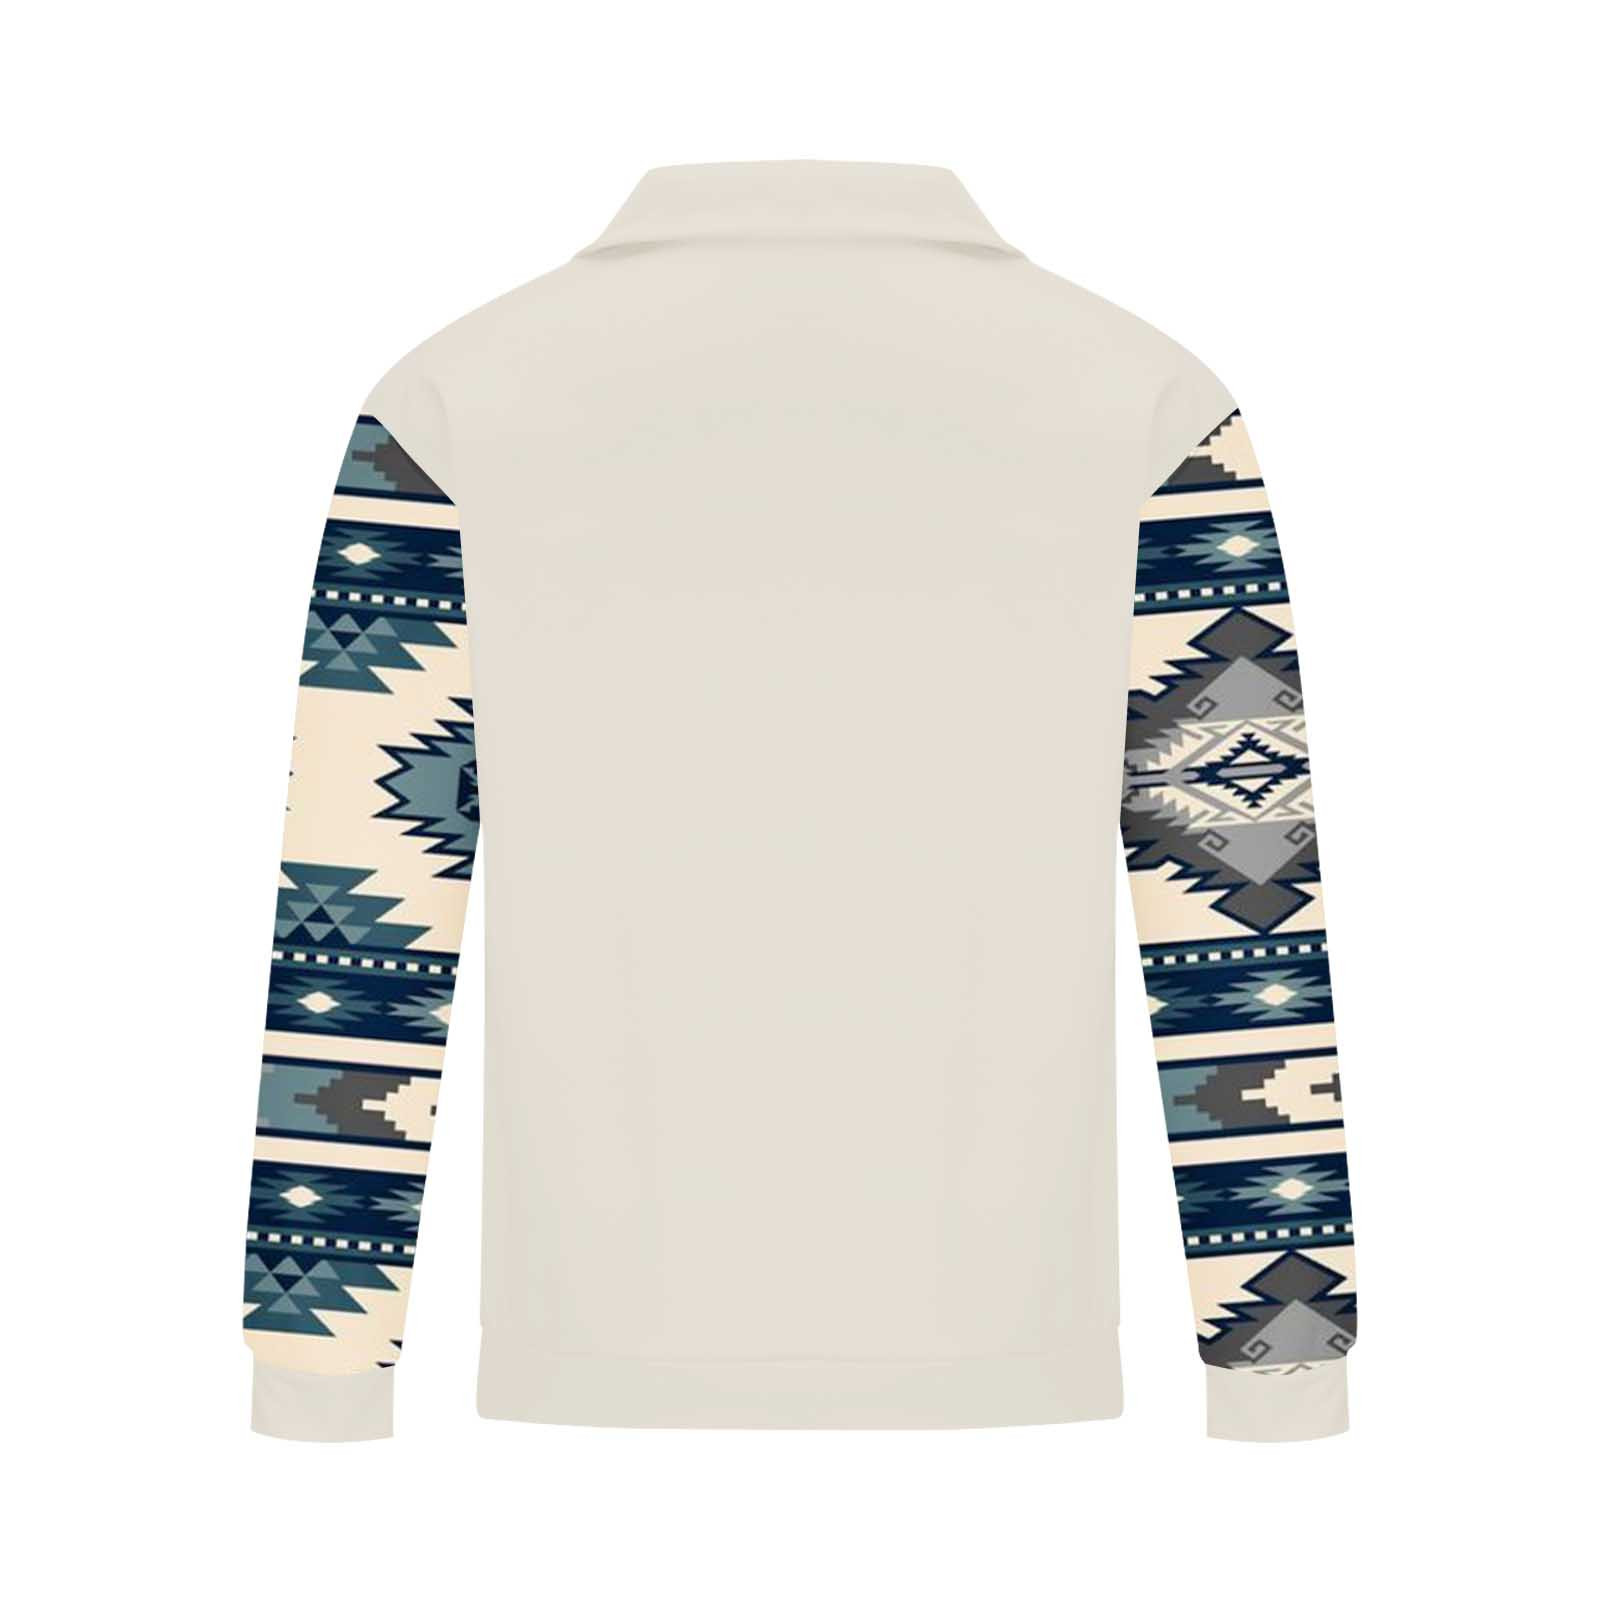 Men's Western Ethnic Print Sweatshirts 1/4 Zip Long Sleeve Pullover ...